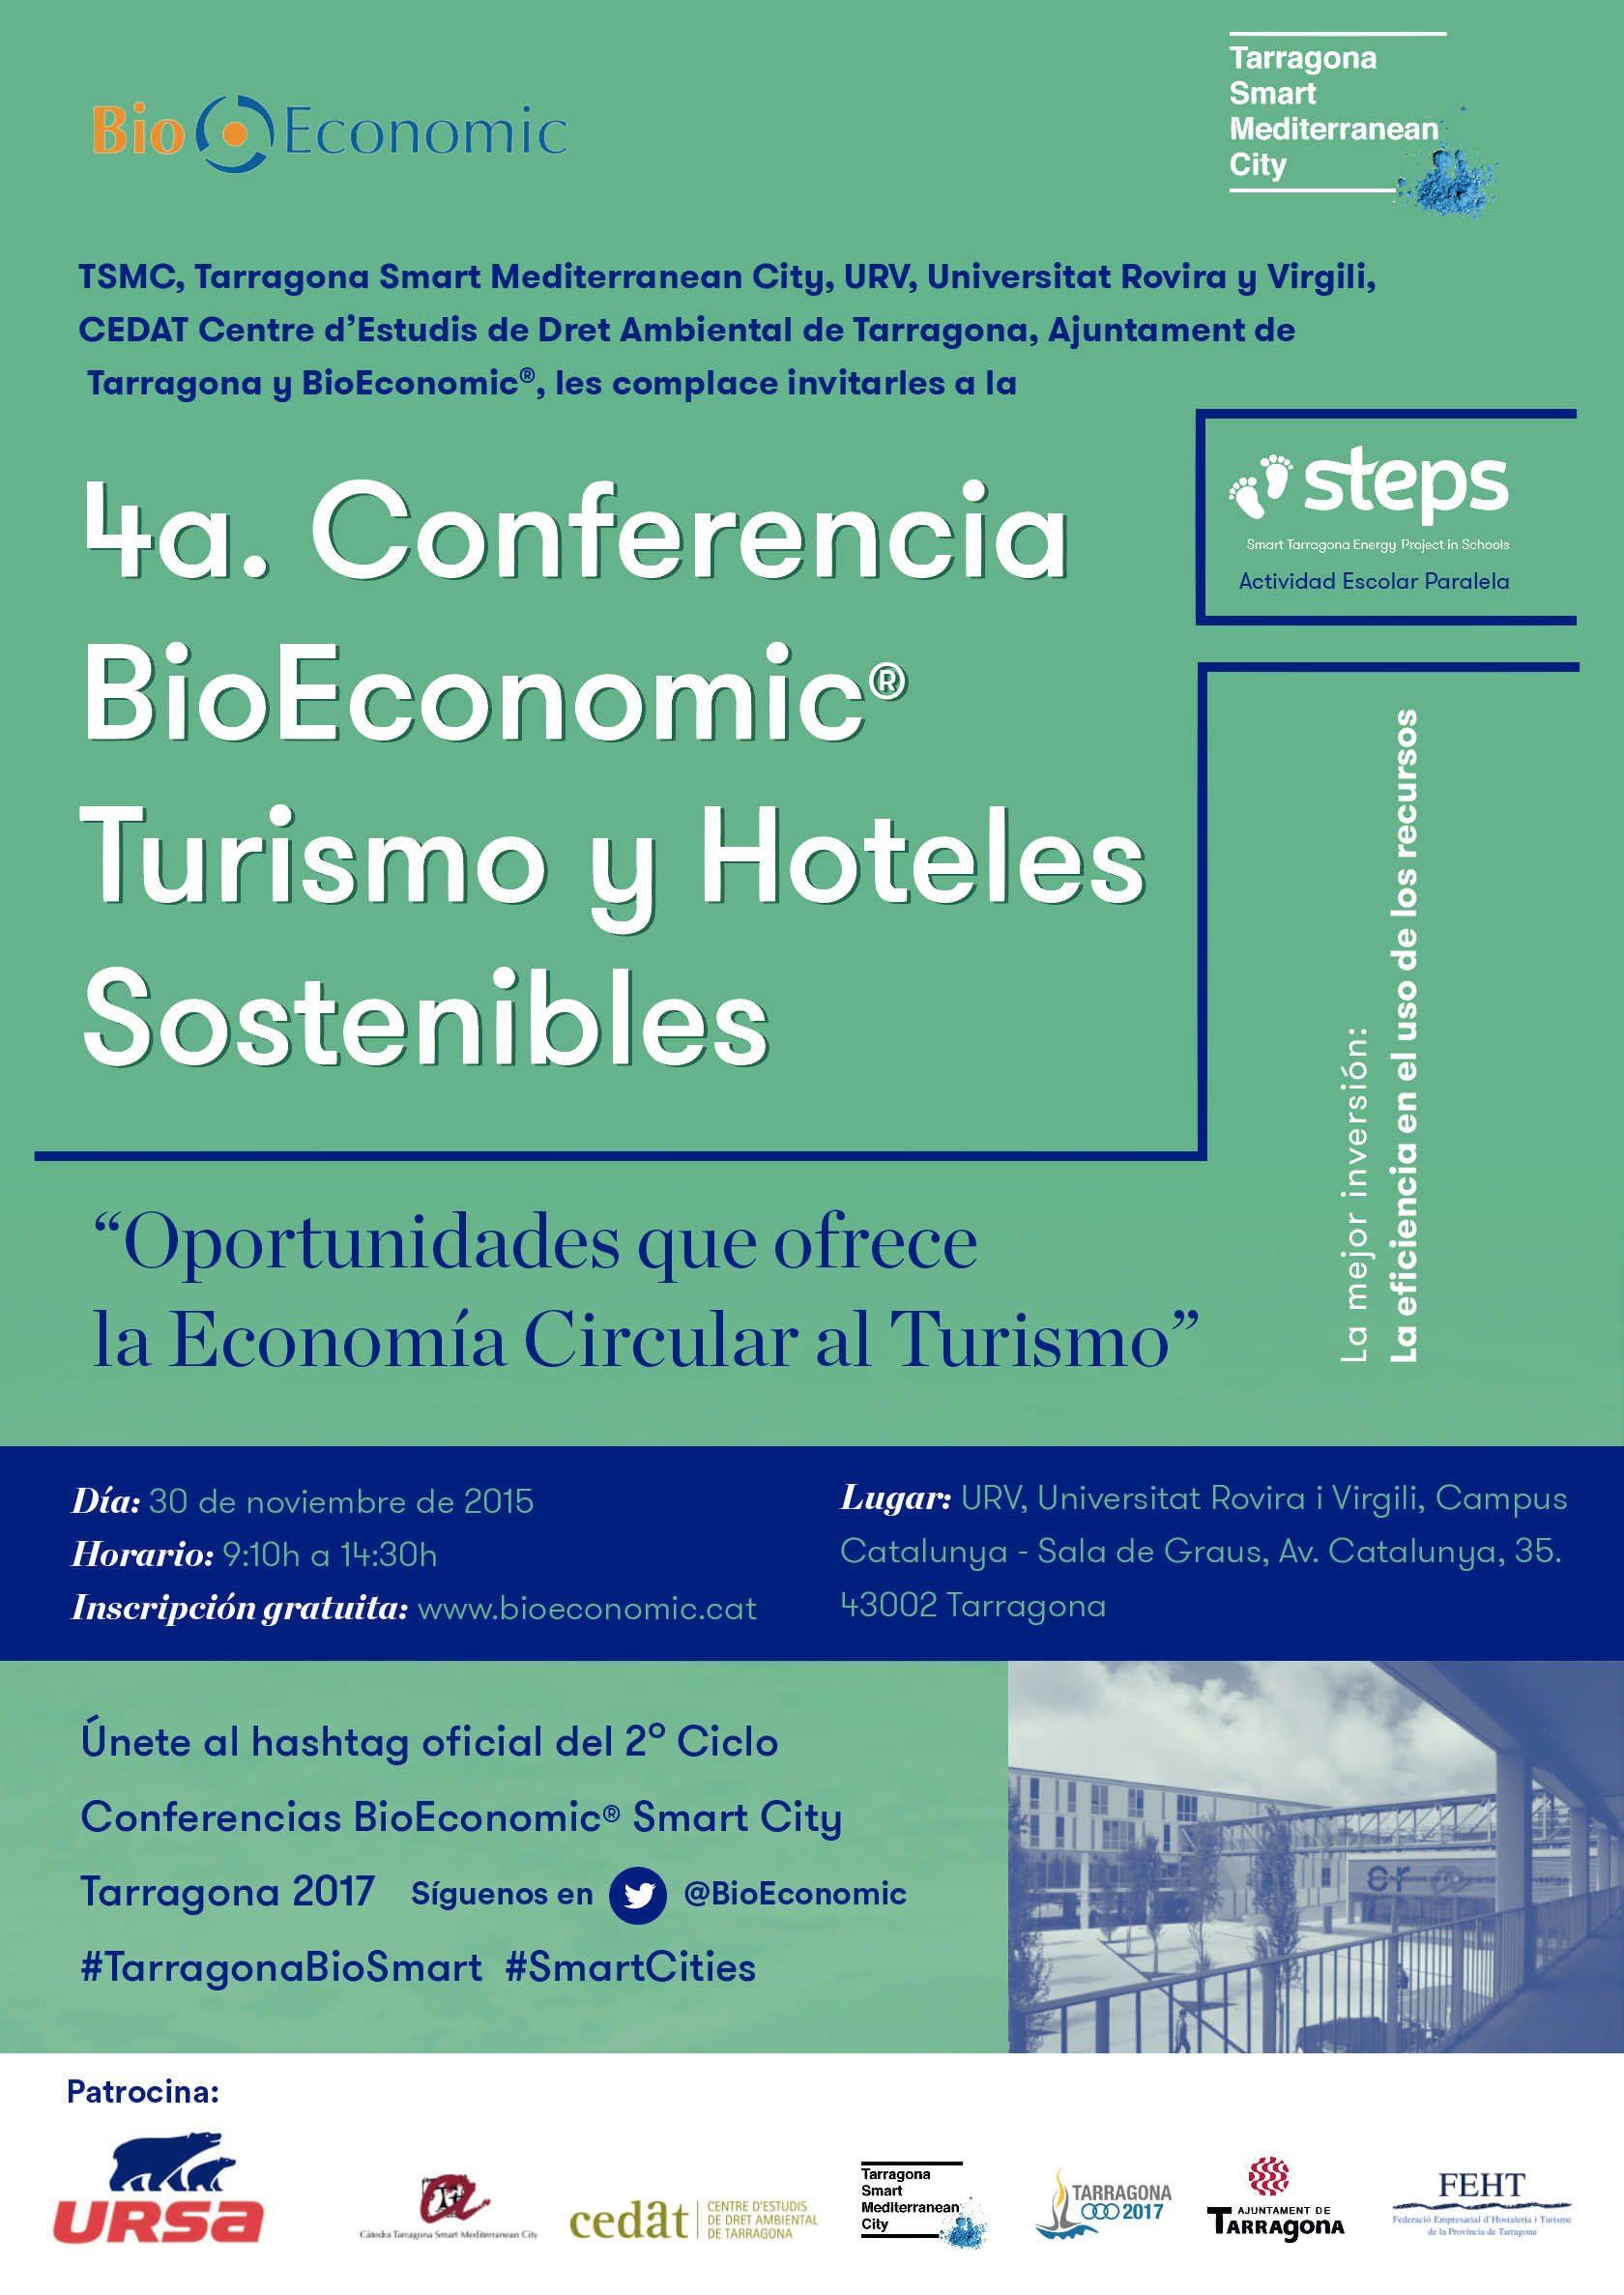 Tarragona - 4 Conferencia BioEconomic Turismo y Hoteles Sostenibles